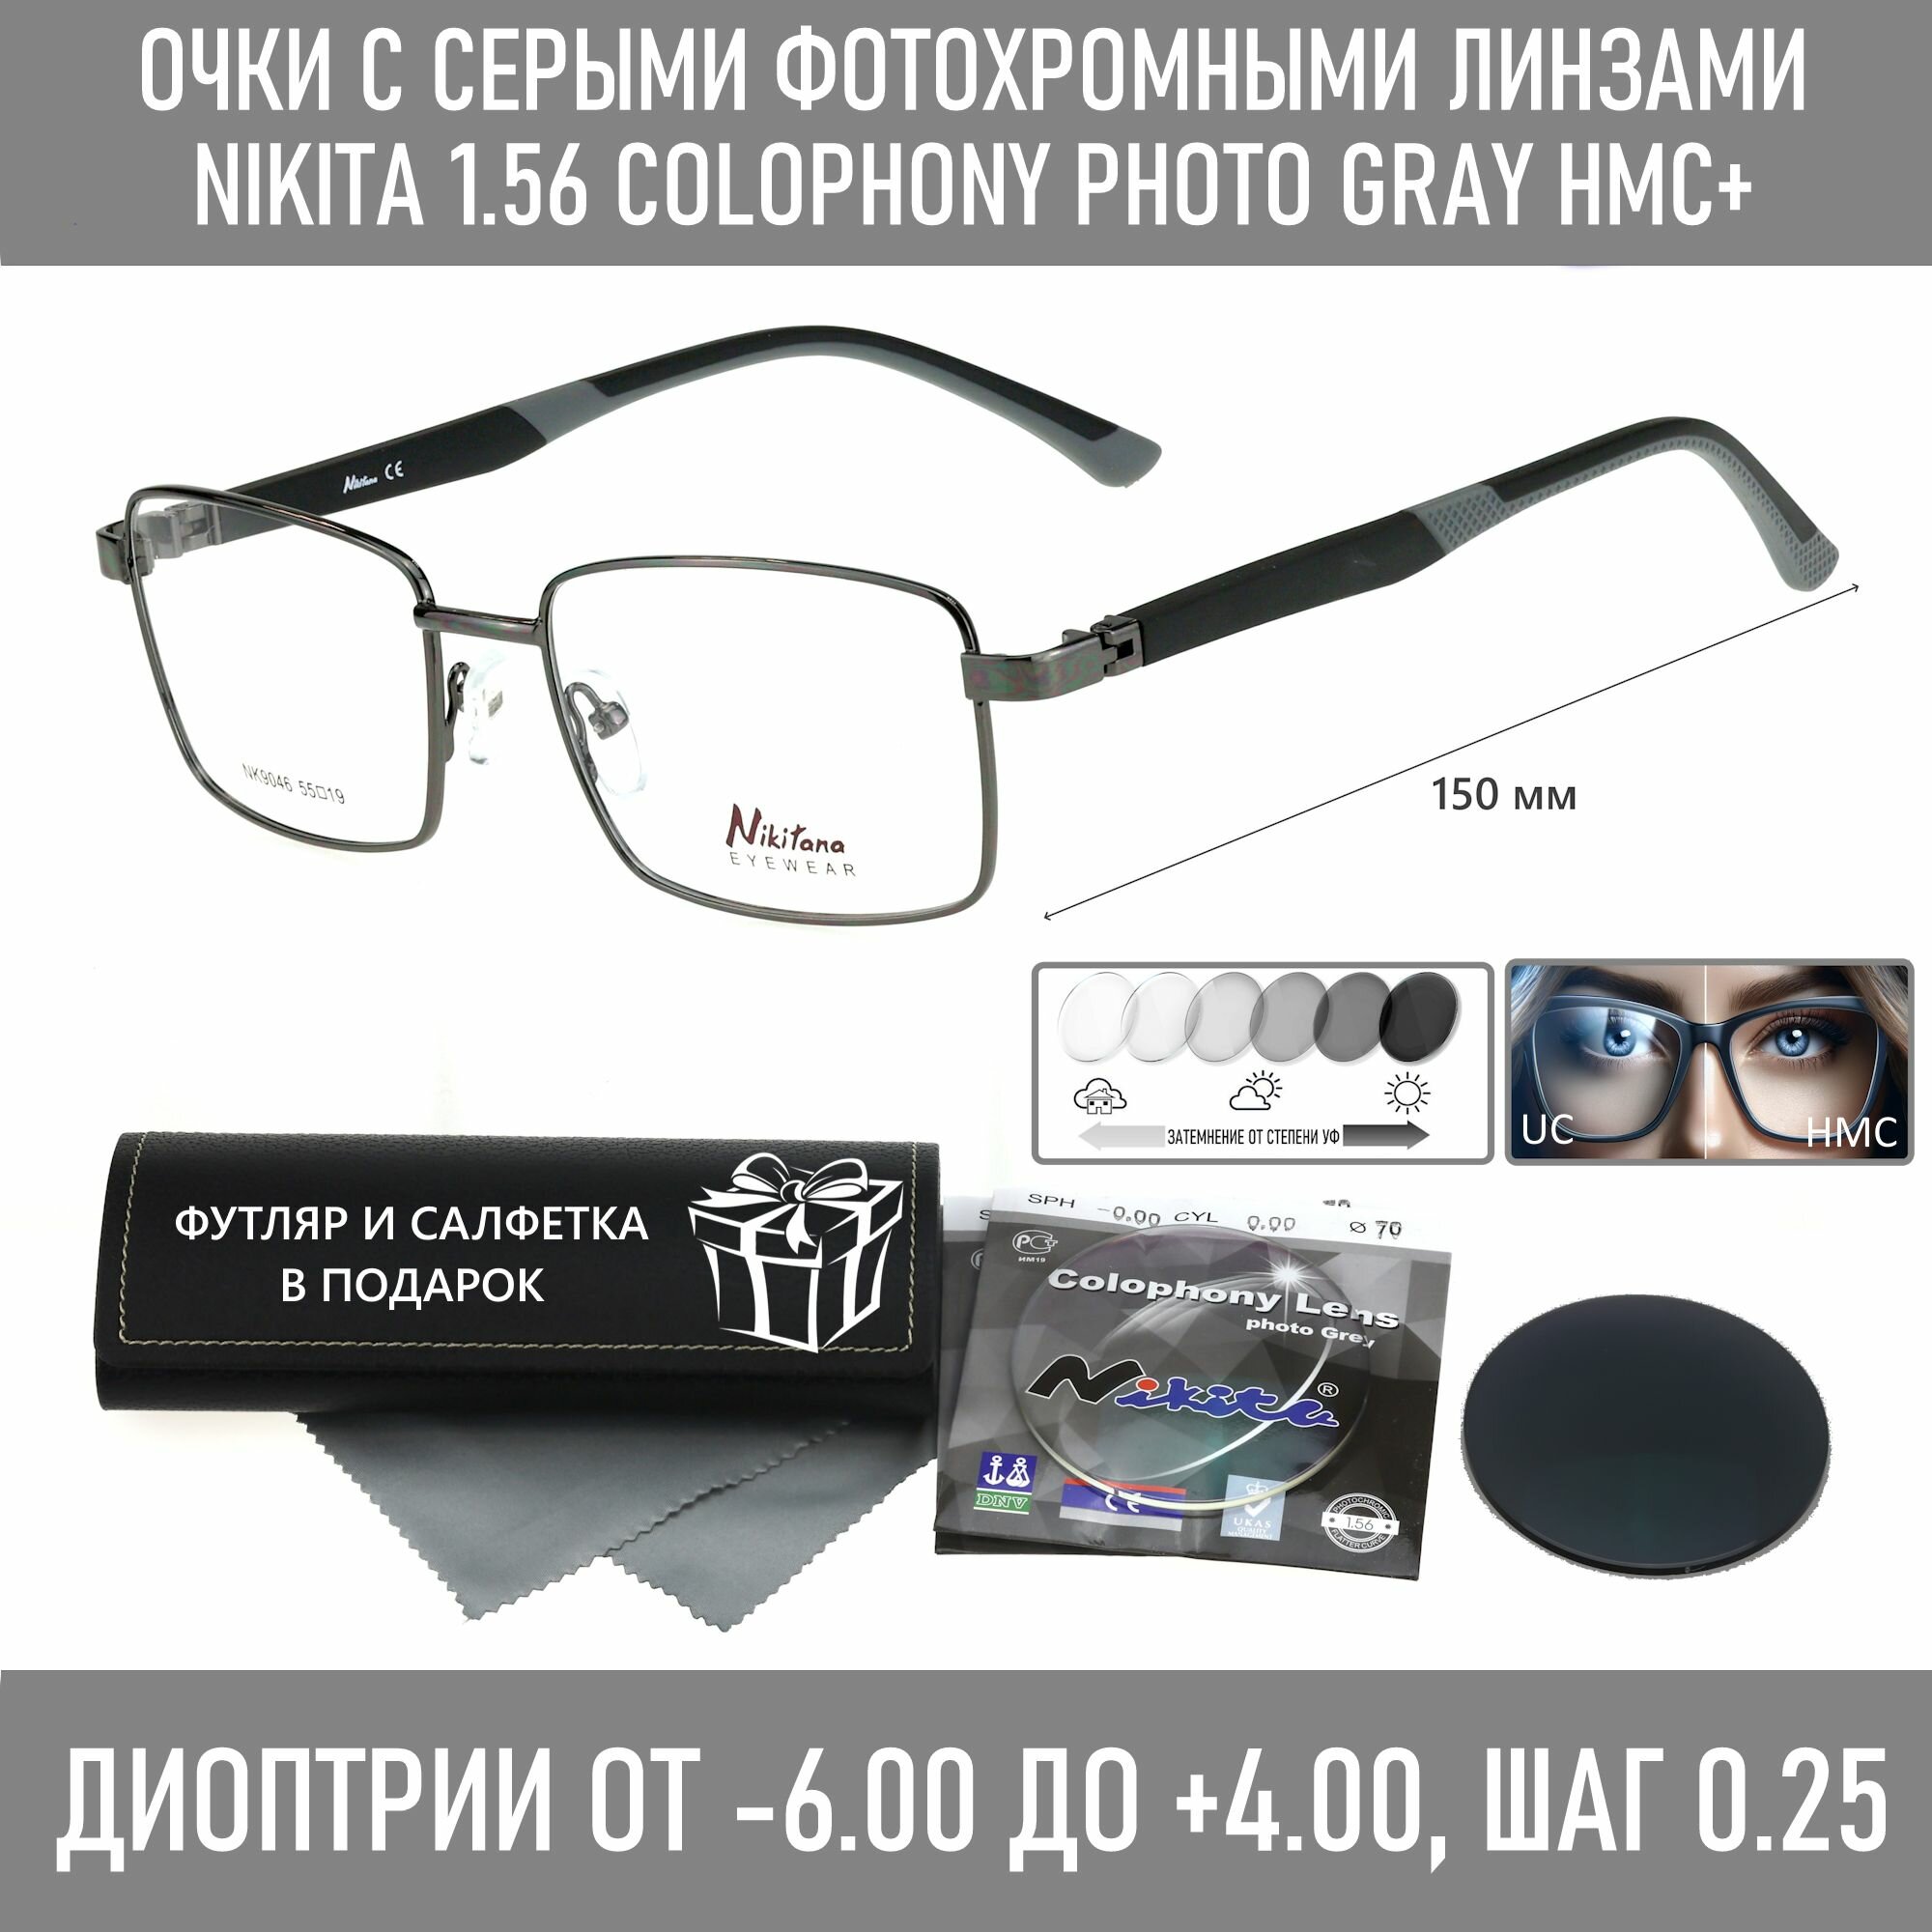 Фотохромные очки для чтения с футляром на магните NIKITANA мод. 9046 Цвет 3 с линзами NIKITA 1.56 Colophony GRAY, HMC+ +3.00 РЦ 66-68